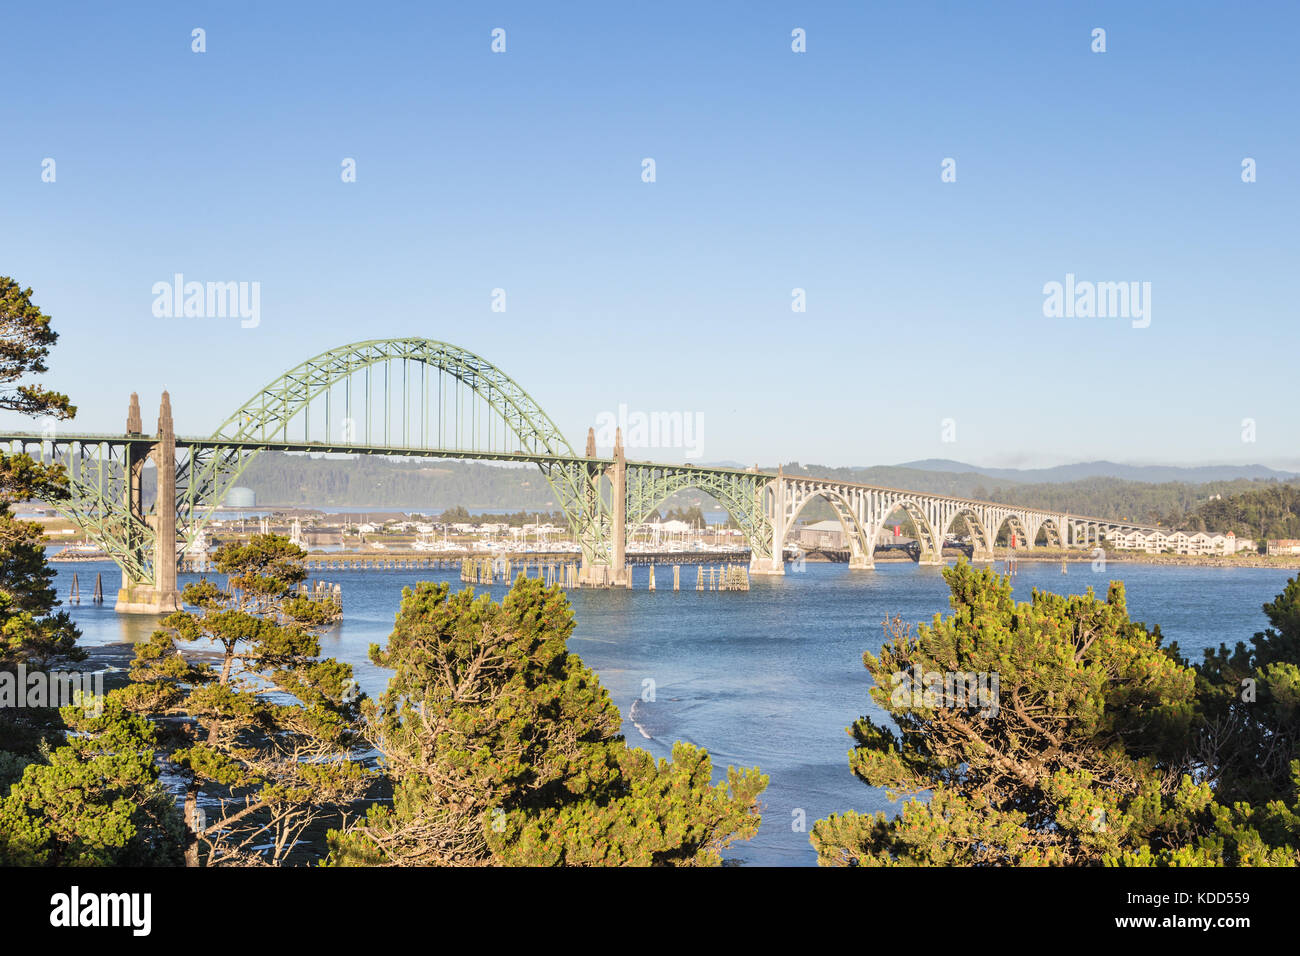 El puente de Newport, en el estado de Oregon, en la costa del Pacífico, en el noroeste de EE.UU. Esta es una parada a lo largo de la autopista 101 Foto de stock